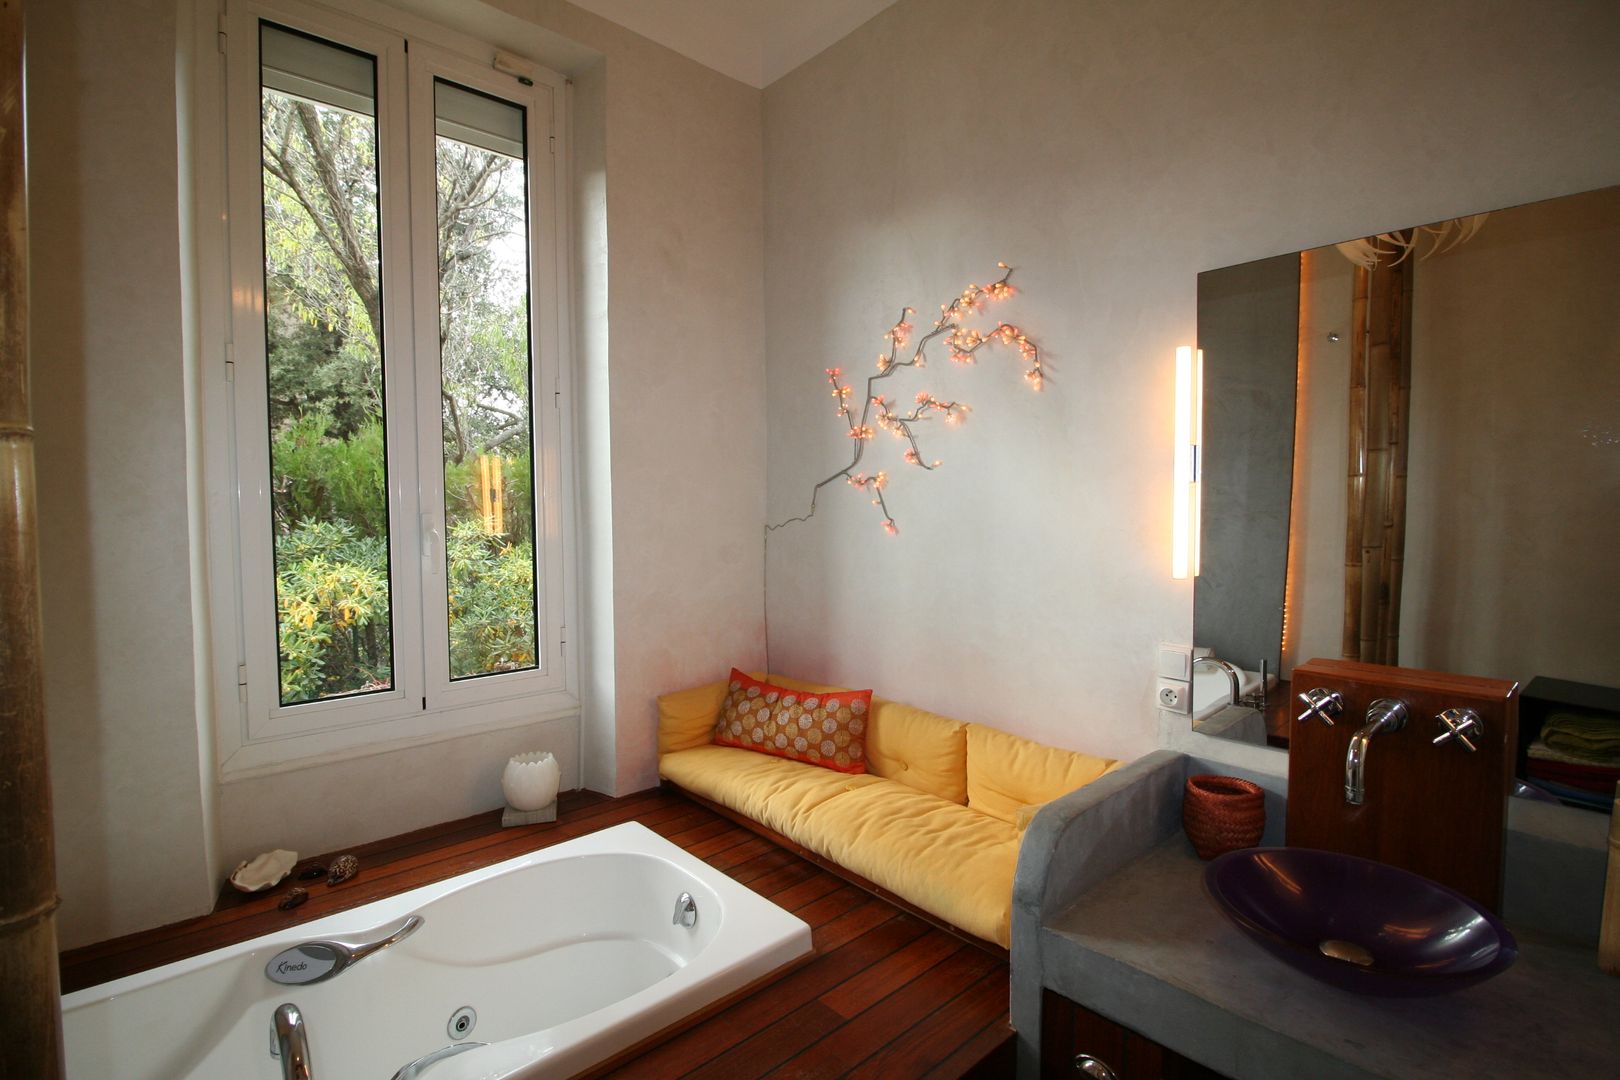 Salle de bain avec vue sur la verdure, LM Interieur Design LM Interieur Design 和風の お風呂